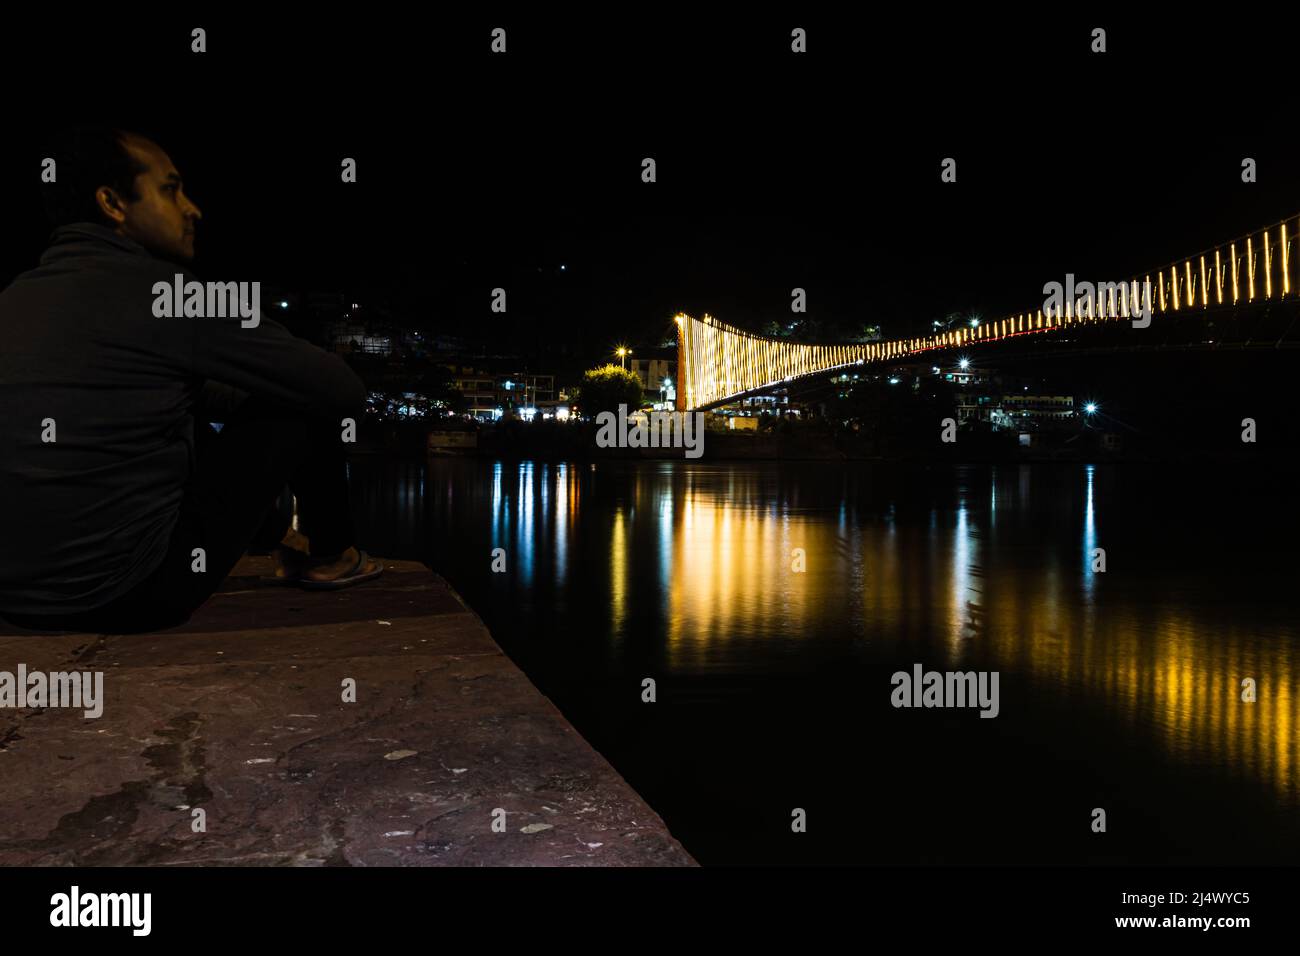 homme regardant le pont de suspension de fer illuminé avec des lumières de ferry avec l'image de réflexion d'eau est prise à rishikesh uttrakhet inde. Banque D'Images